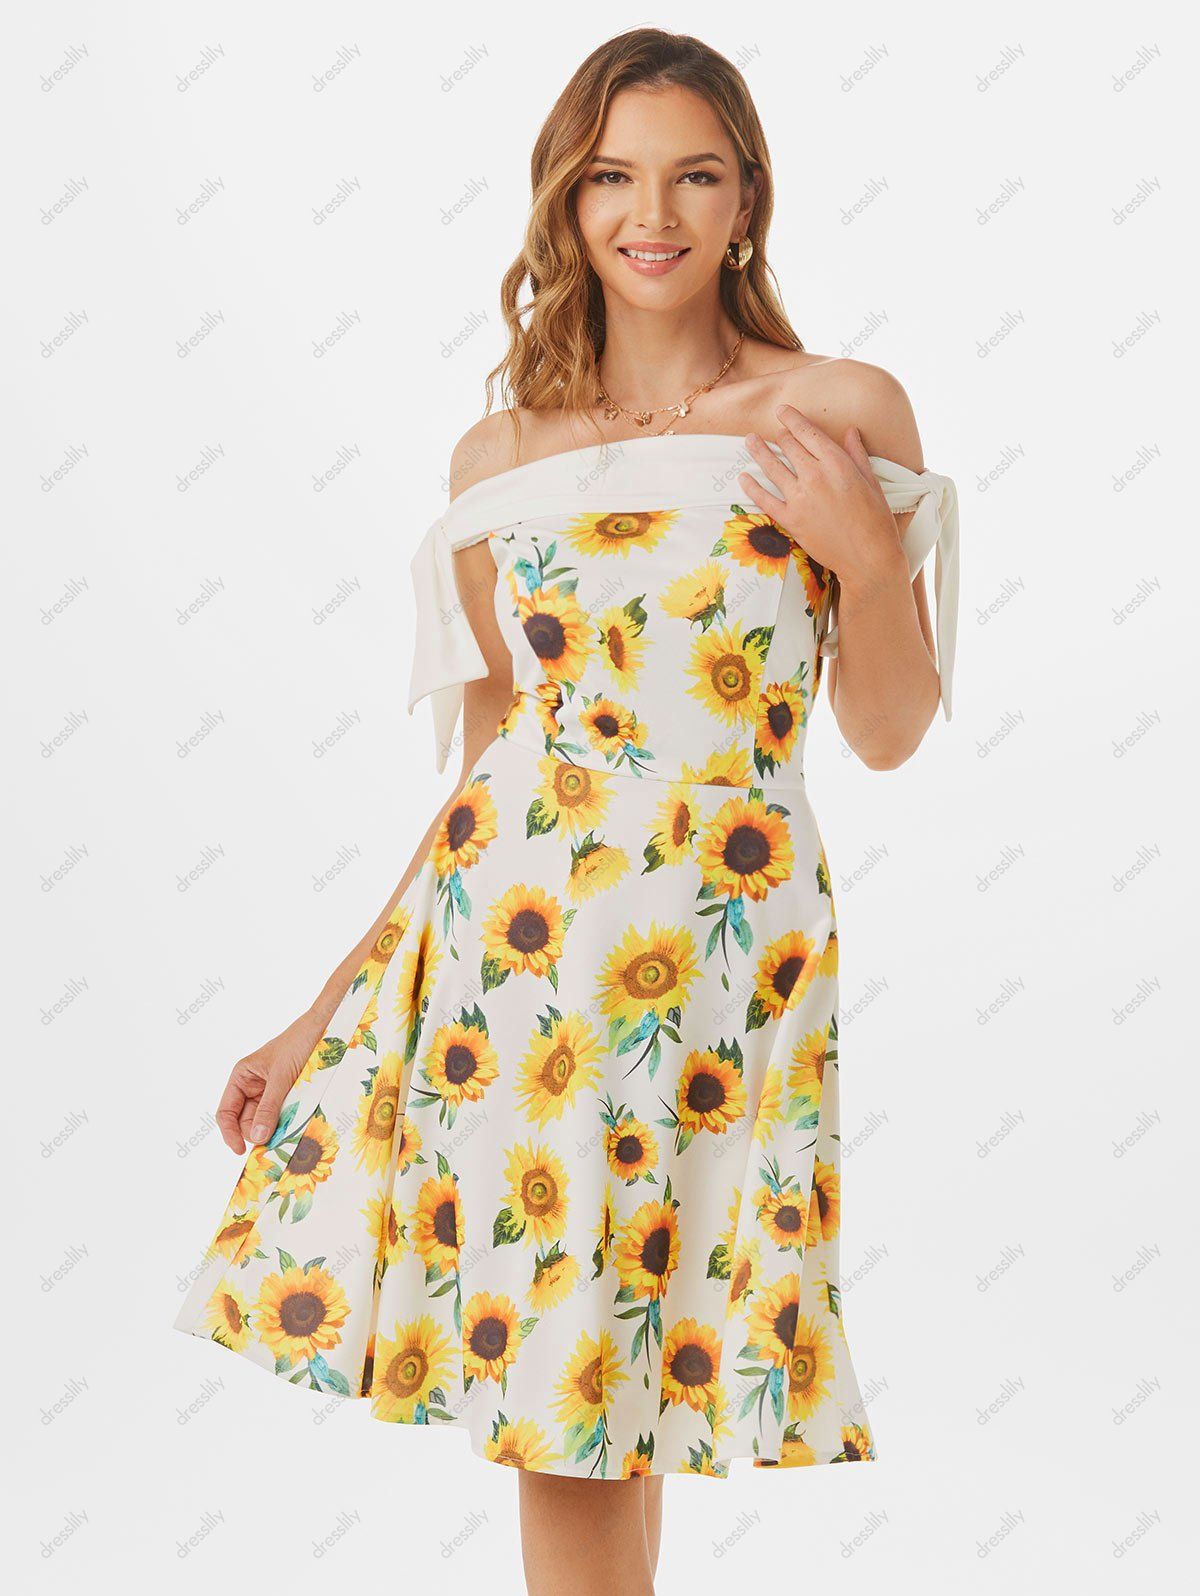 Summer Vacation Dress Sunflower Print Garden Party Dress Off Shoulder Tie Sleeve Mini Dress 